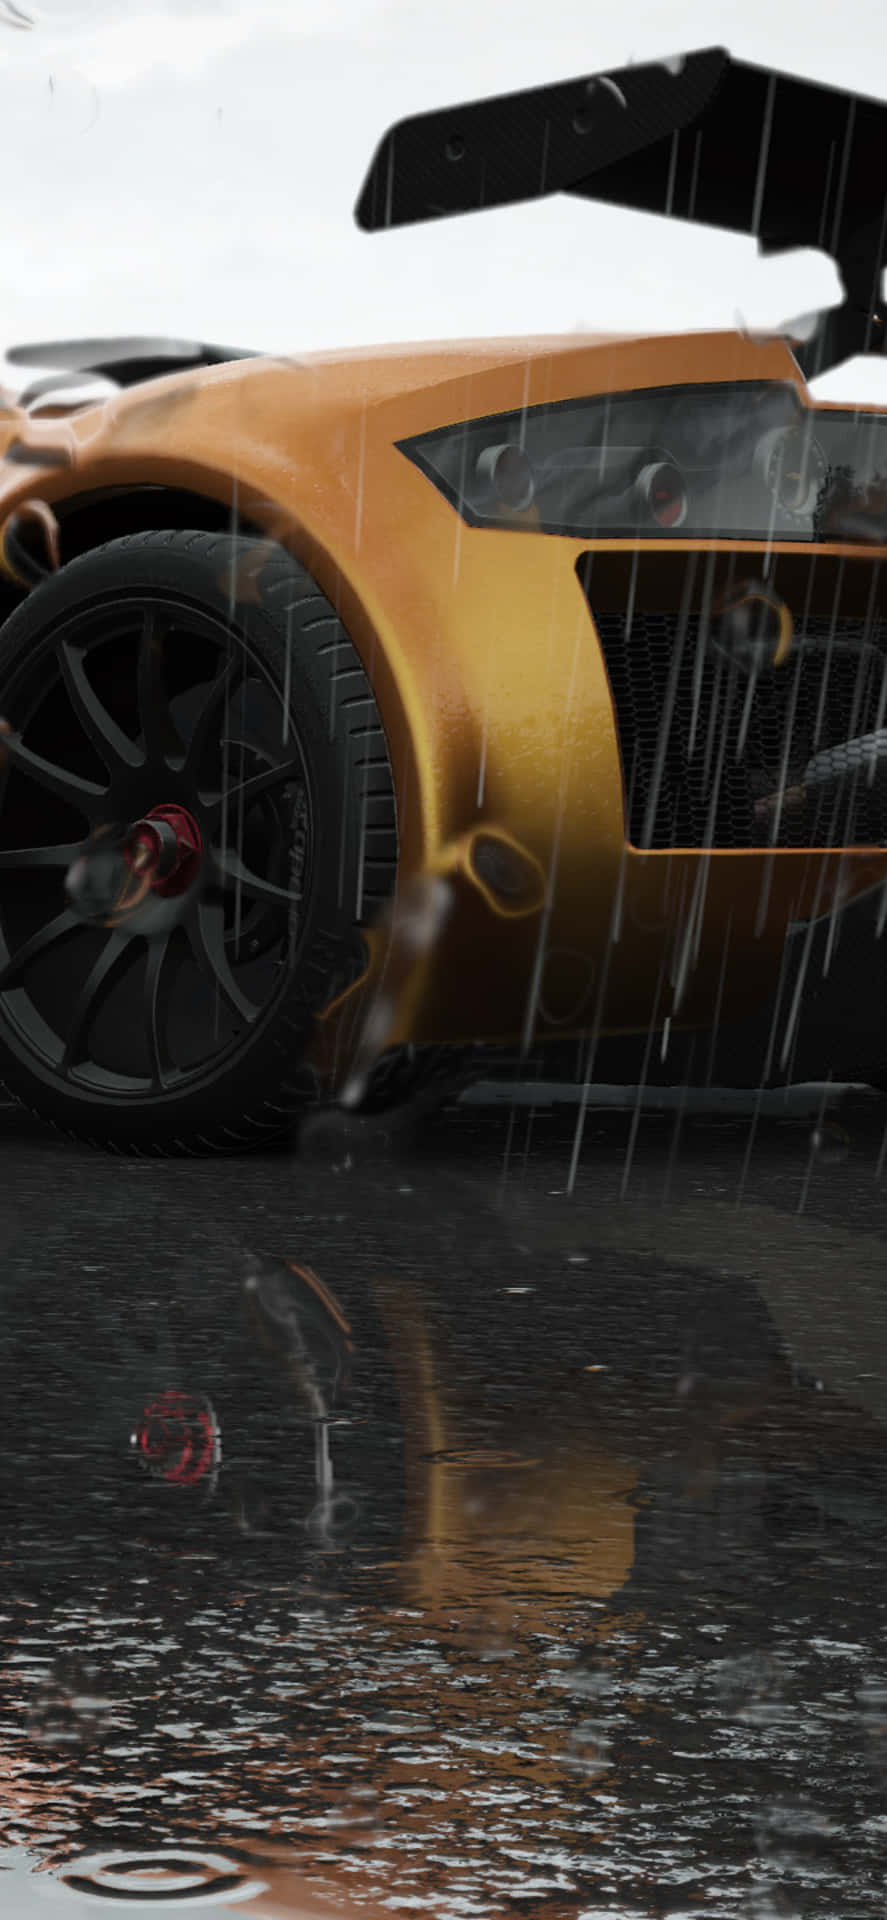 Questaimmagine Presenta Un Simulatore Di Gara Su Iphone Xs Max Con Project Cars 2.